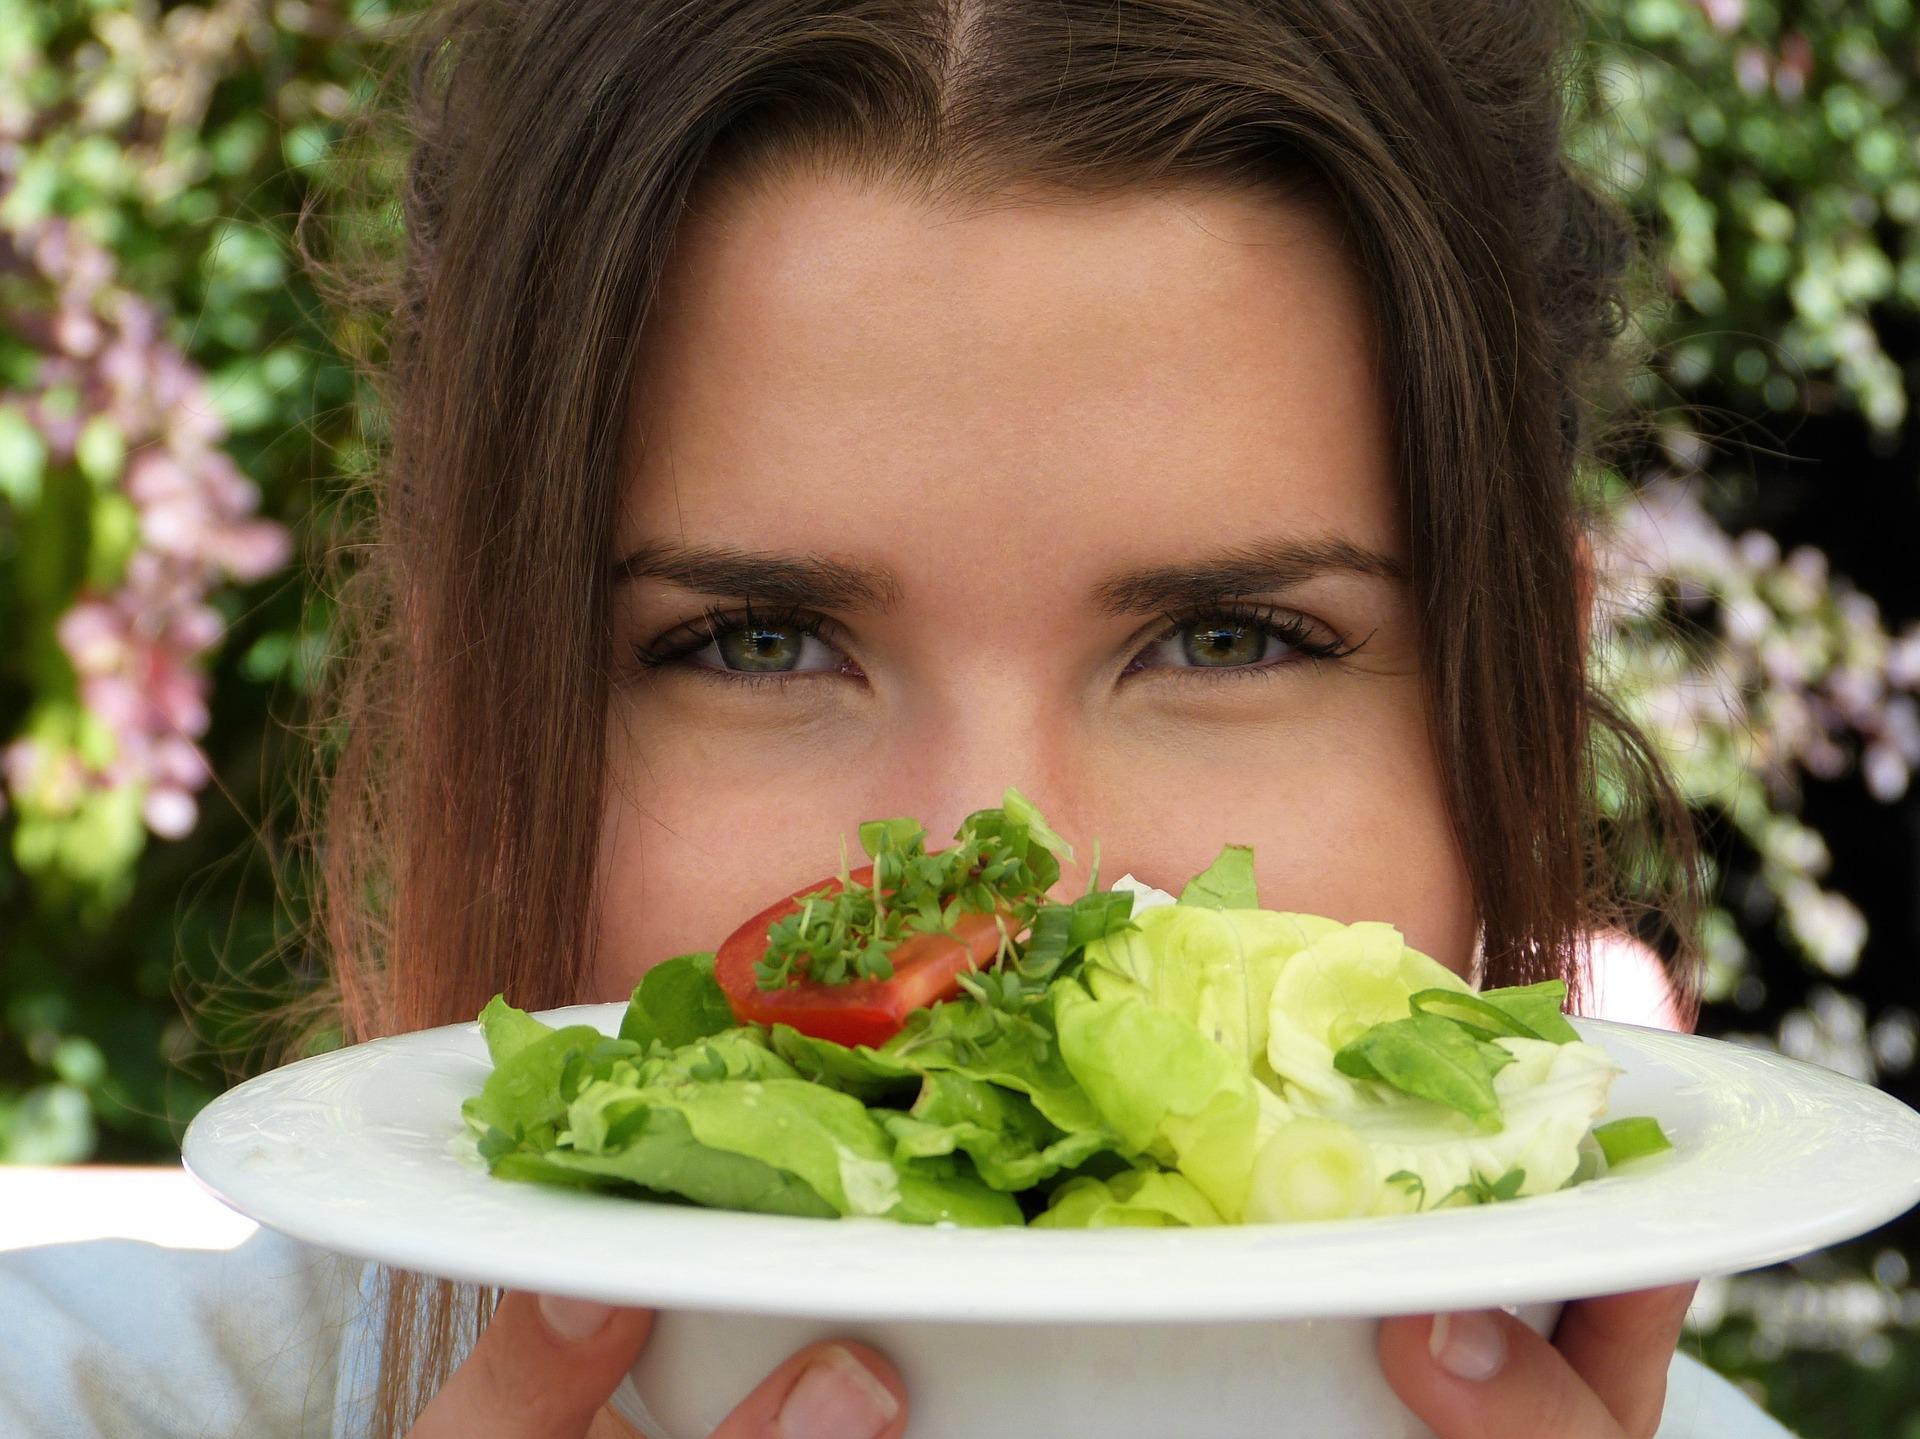 Un estudio demuestra que pedimos más comida sana al ser observados 